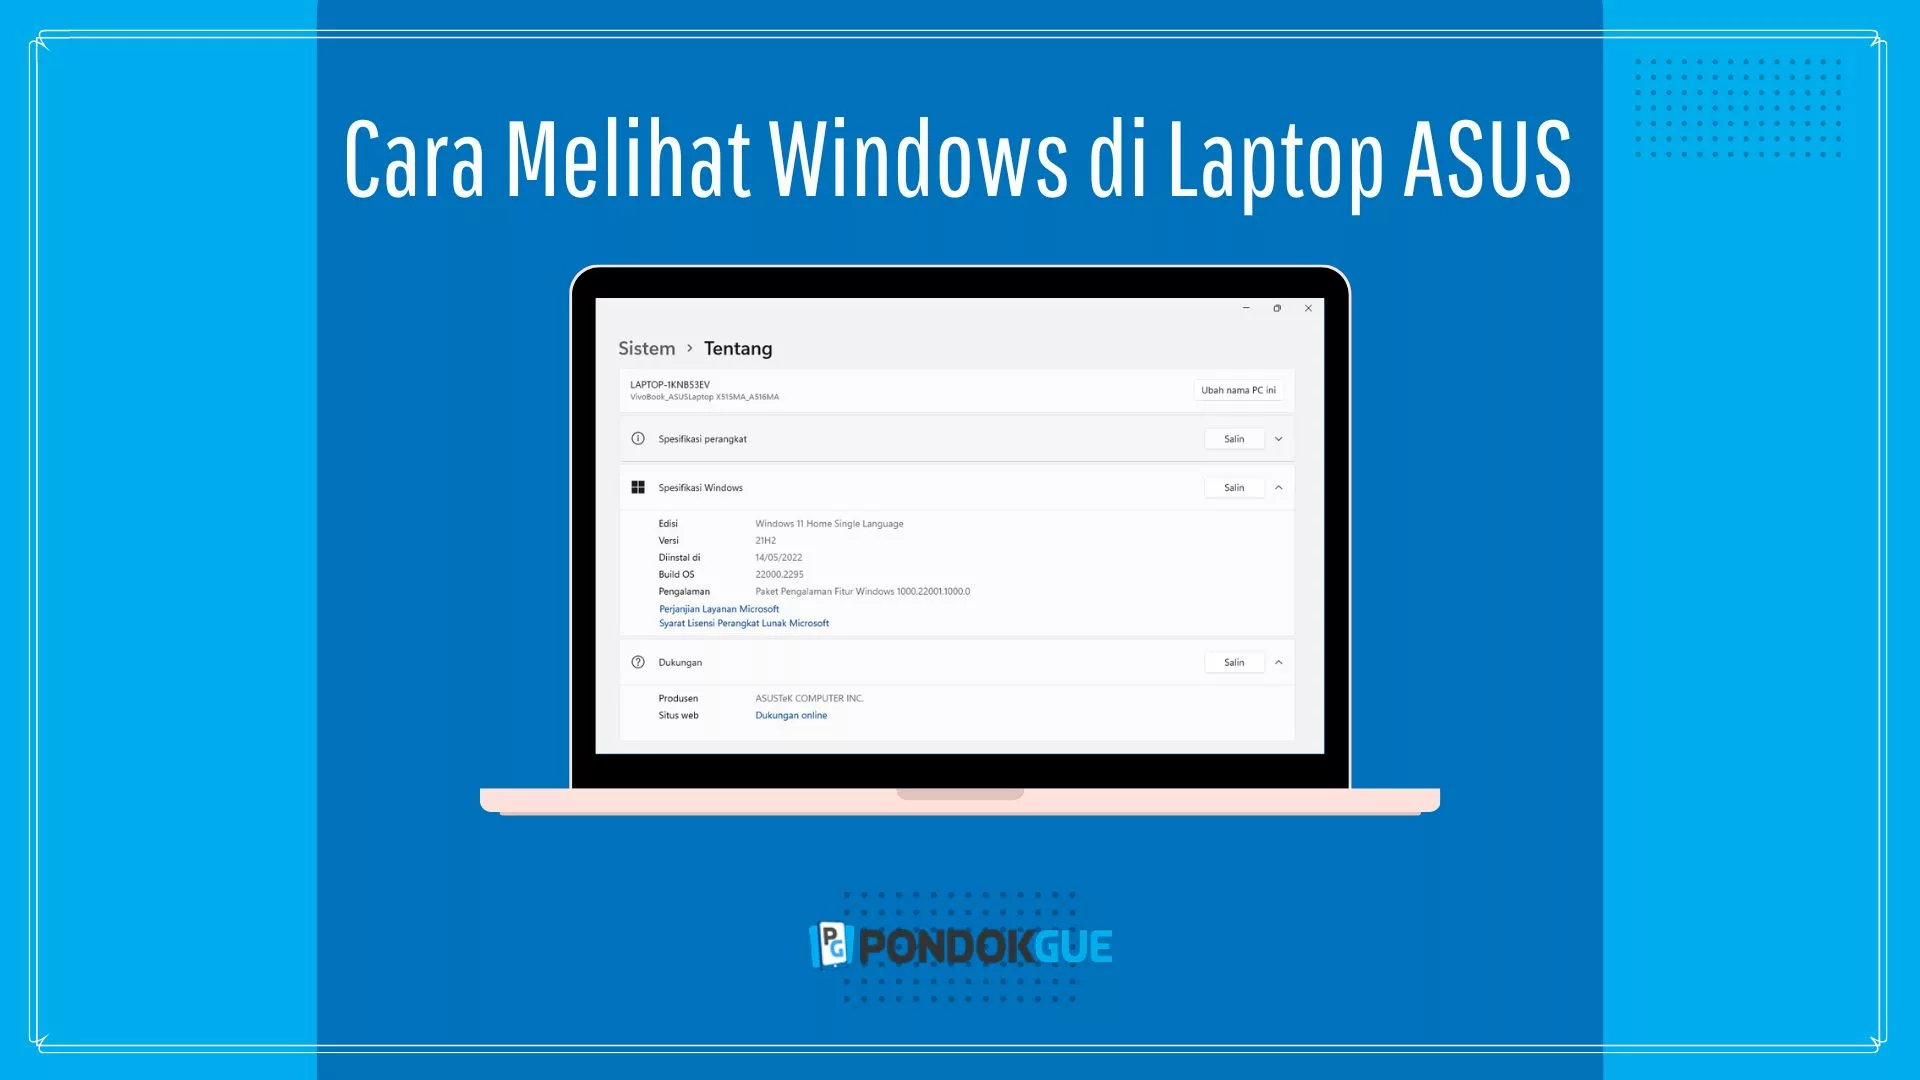 Cara Melihat Windows di Laptop ASUS - Pondokgue.com